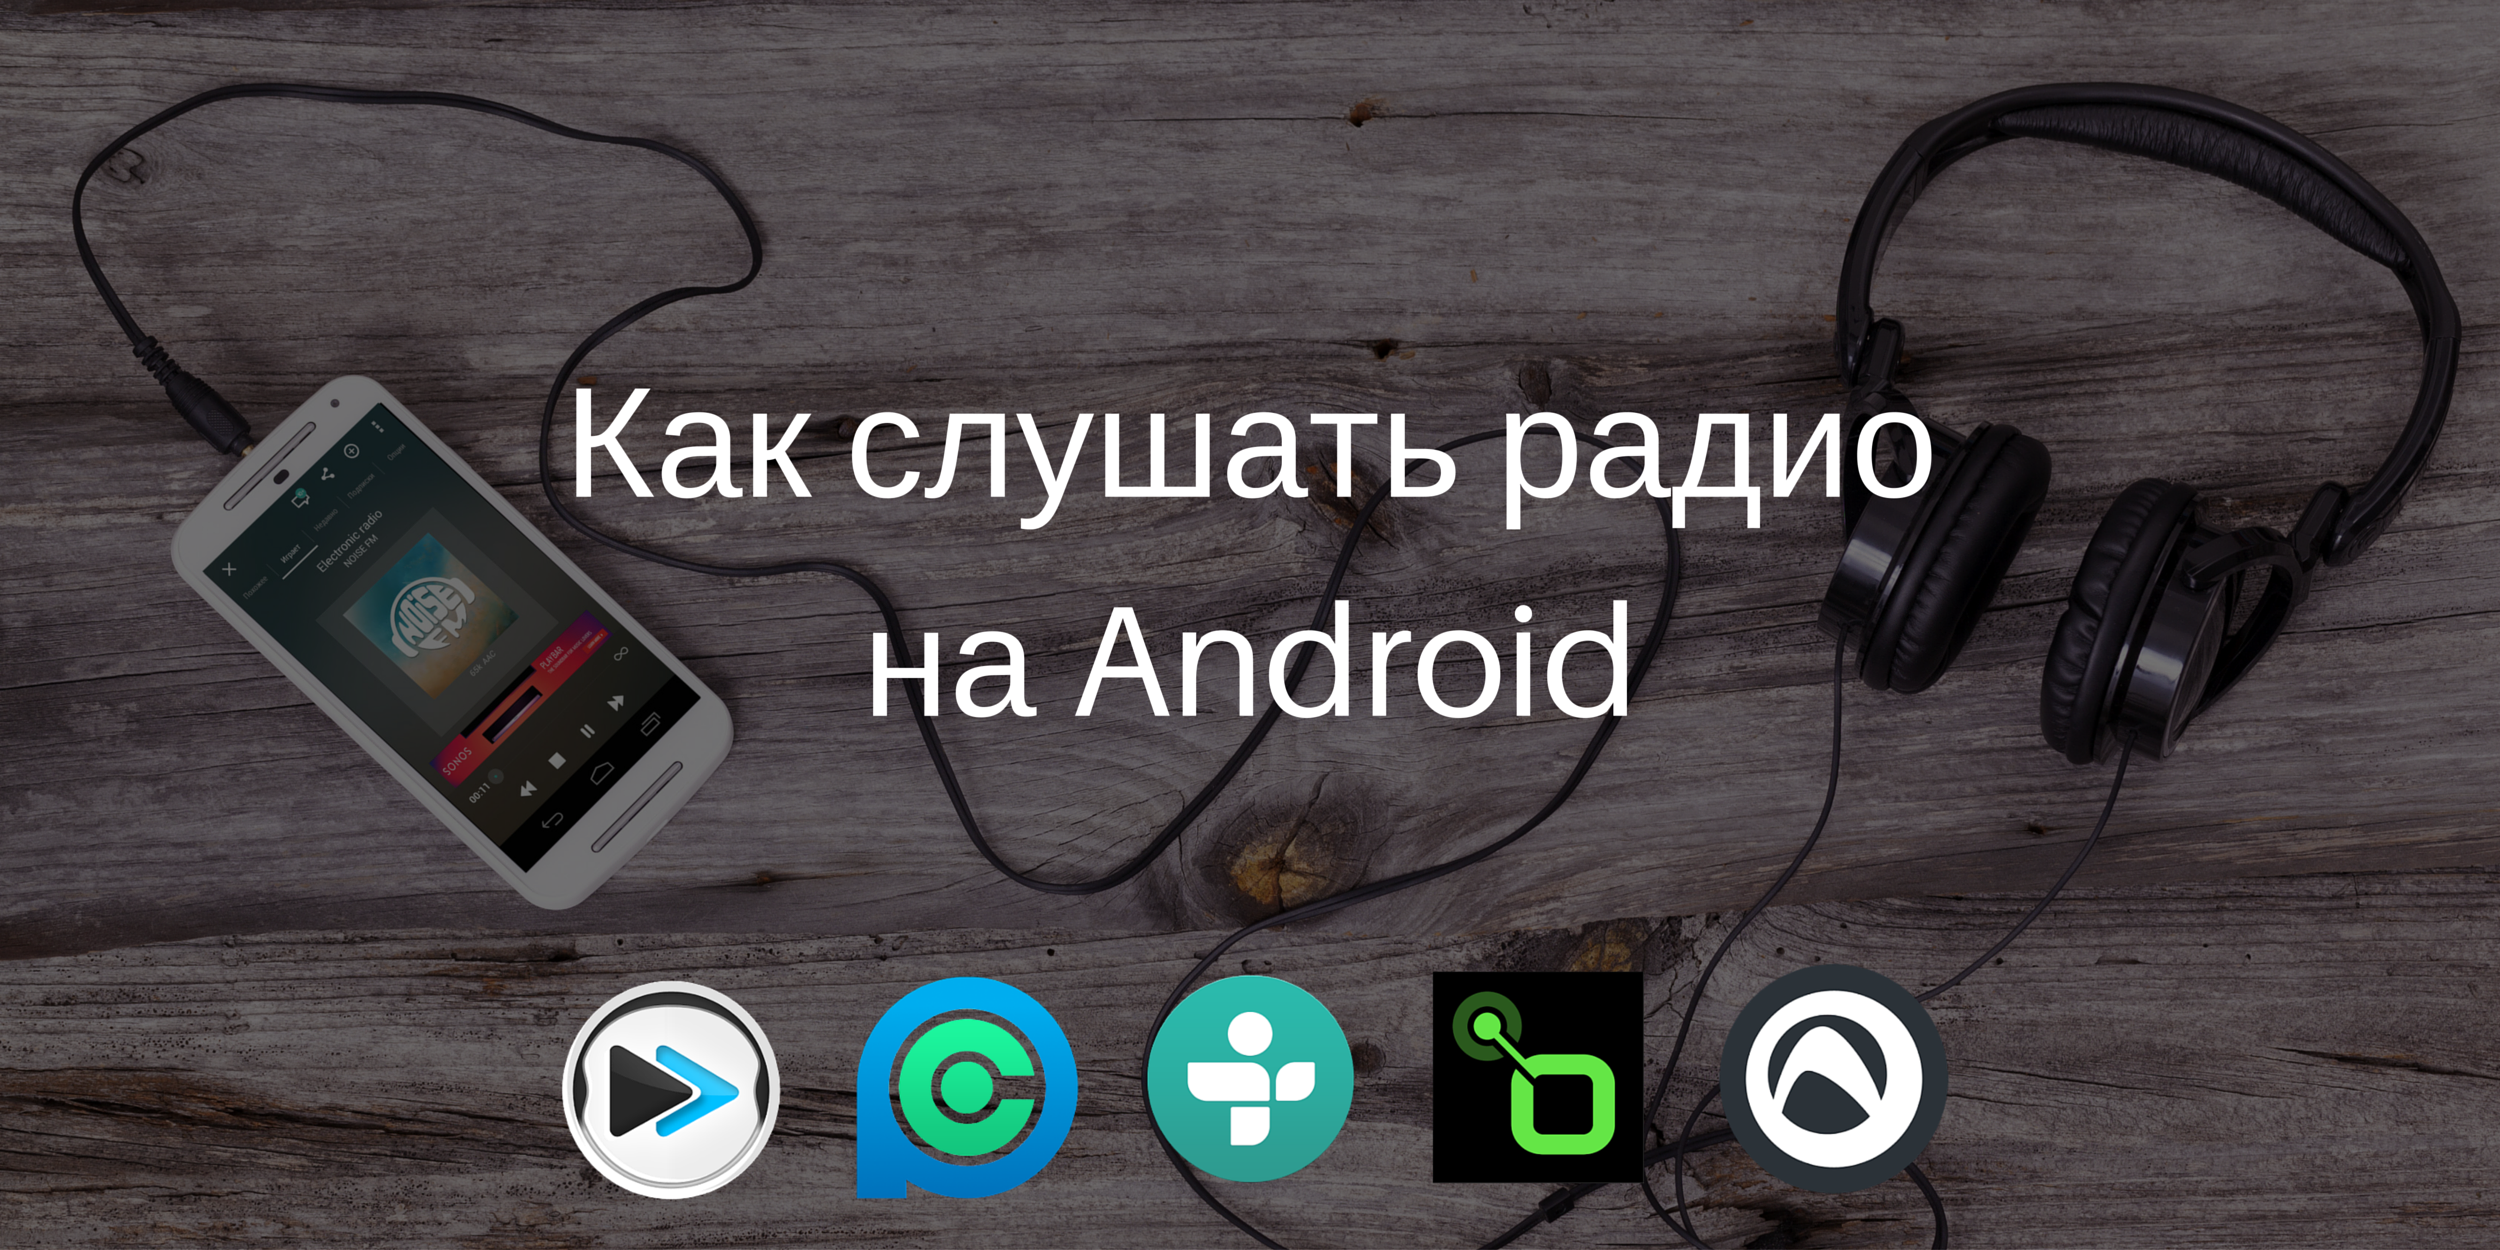 5 приложений для Android, которые пригодятся любителям интернет-радио -  Лайфхакер